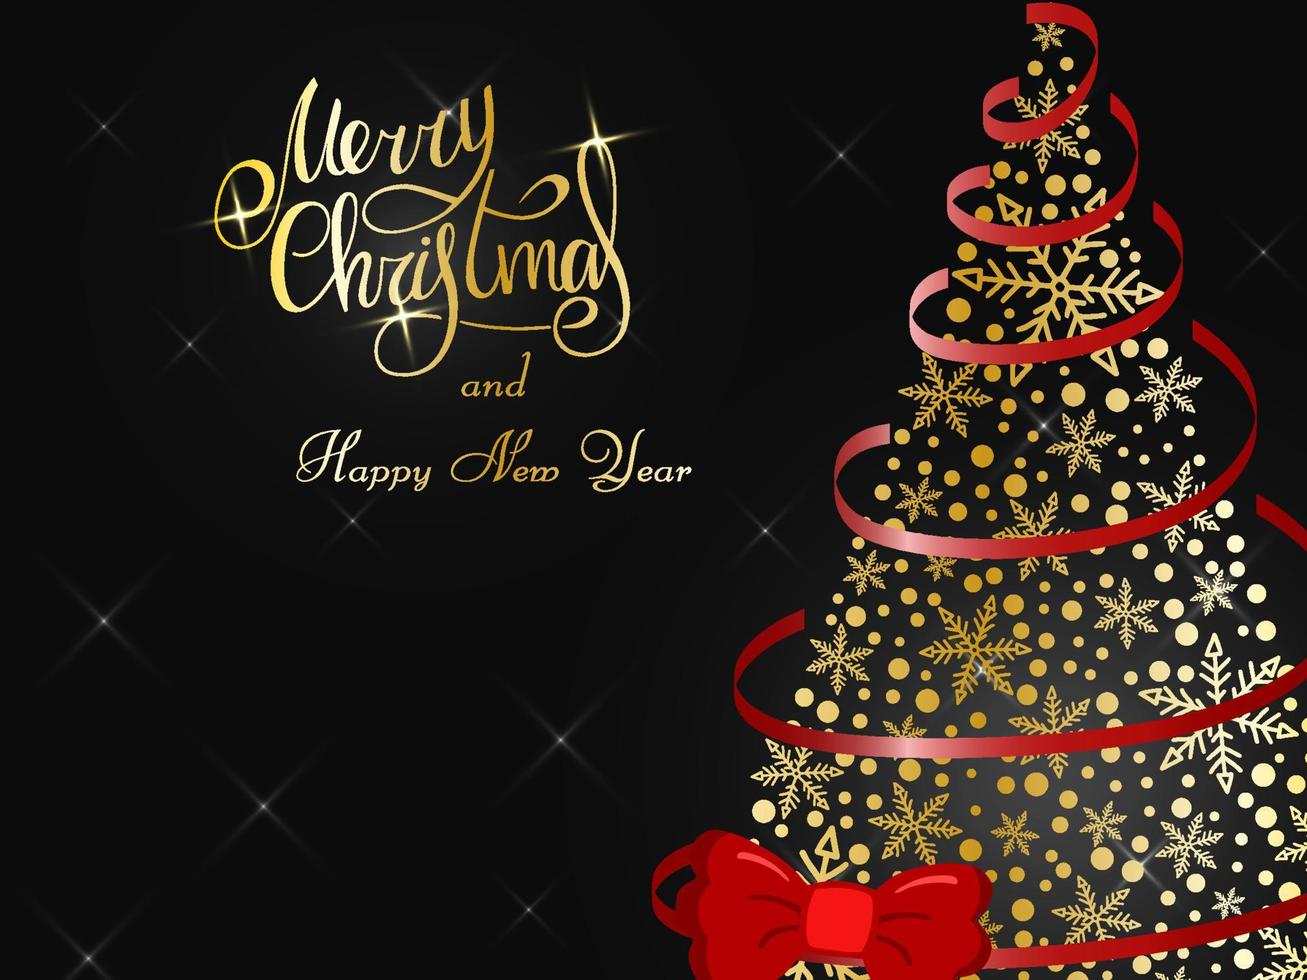 letras doradas manuscritas sobre un fondo gris oscuro. mágico exuberante árbol de navidad dorado de copos de nieve con una cinta roja y un lazo. feliz navidad y próspero año nuevo 2022. vector